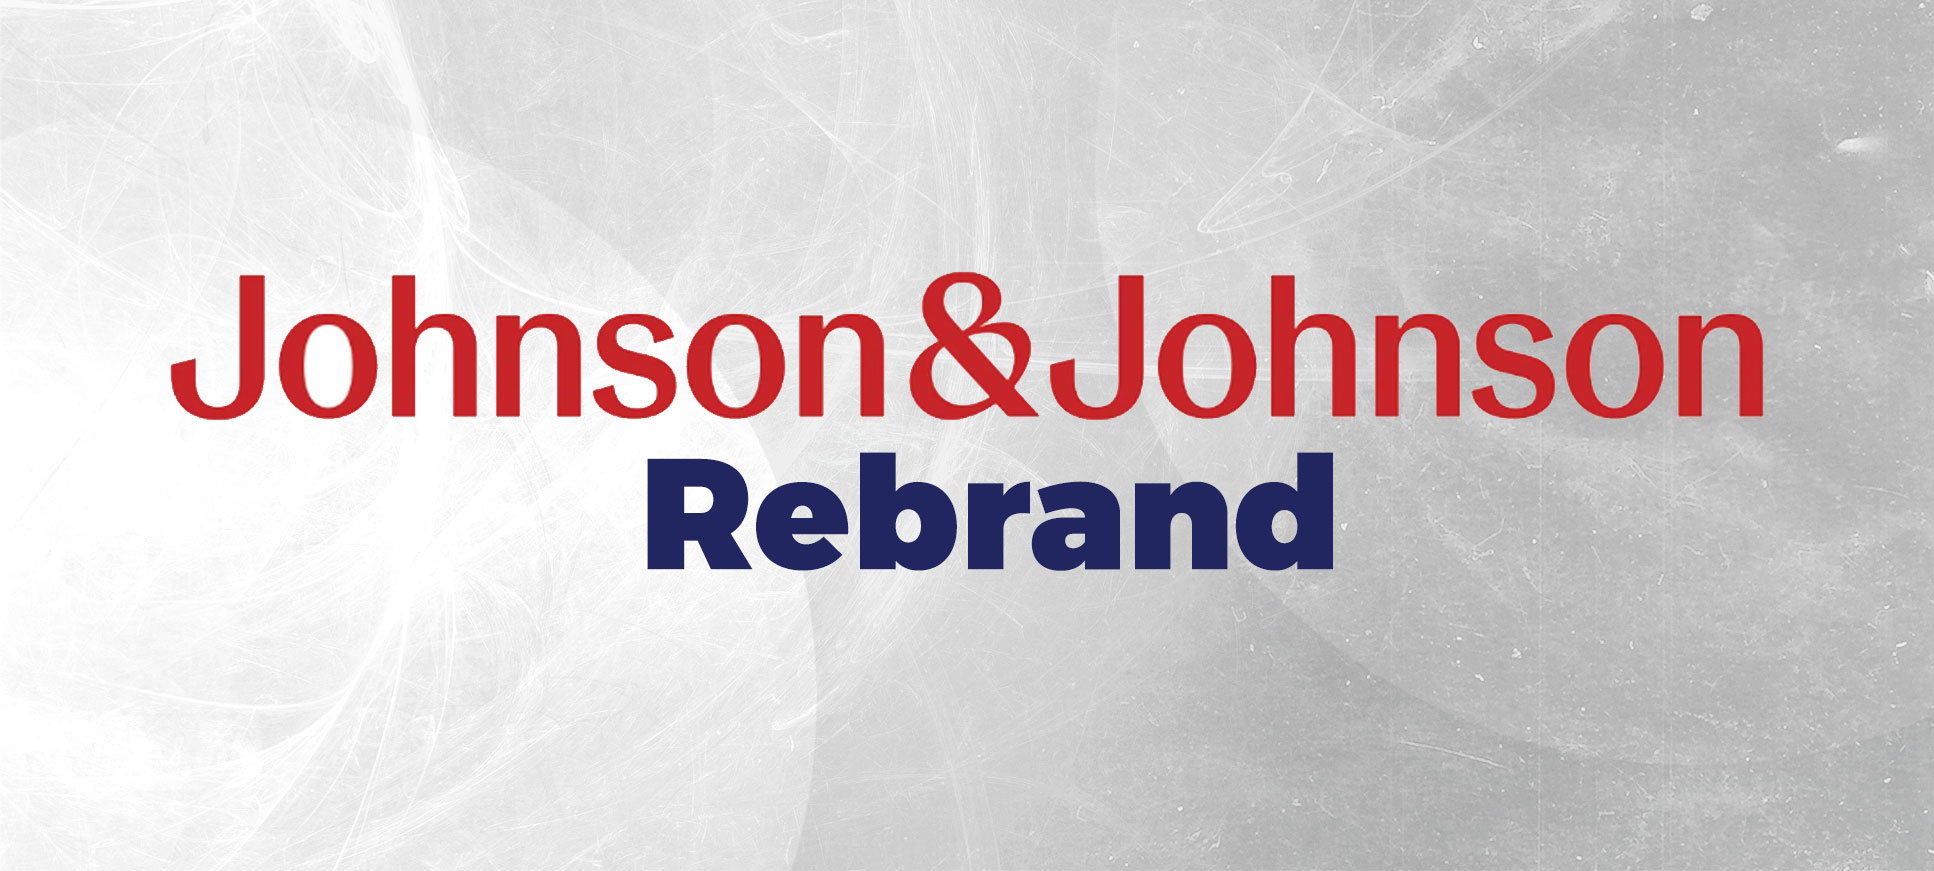 Johnson & Johnson Rebrand - Design Relax